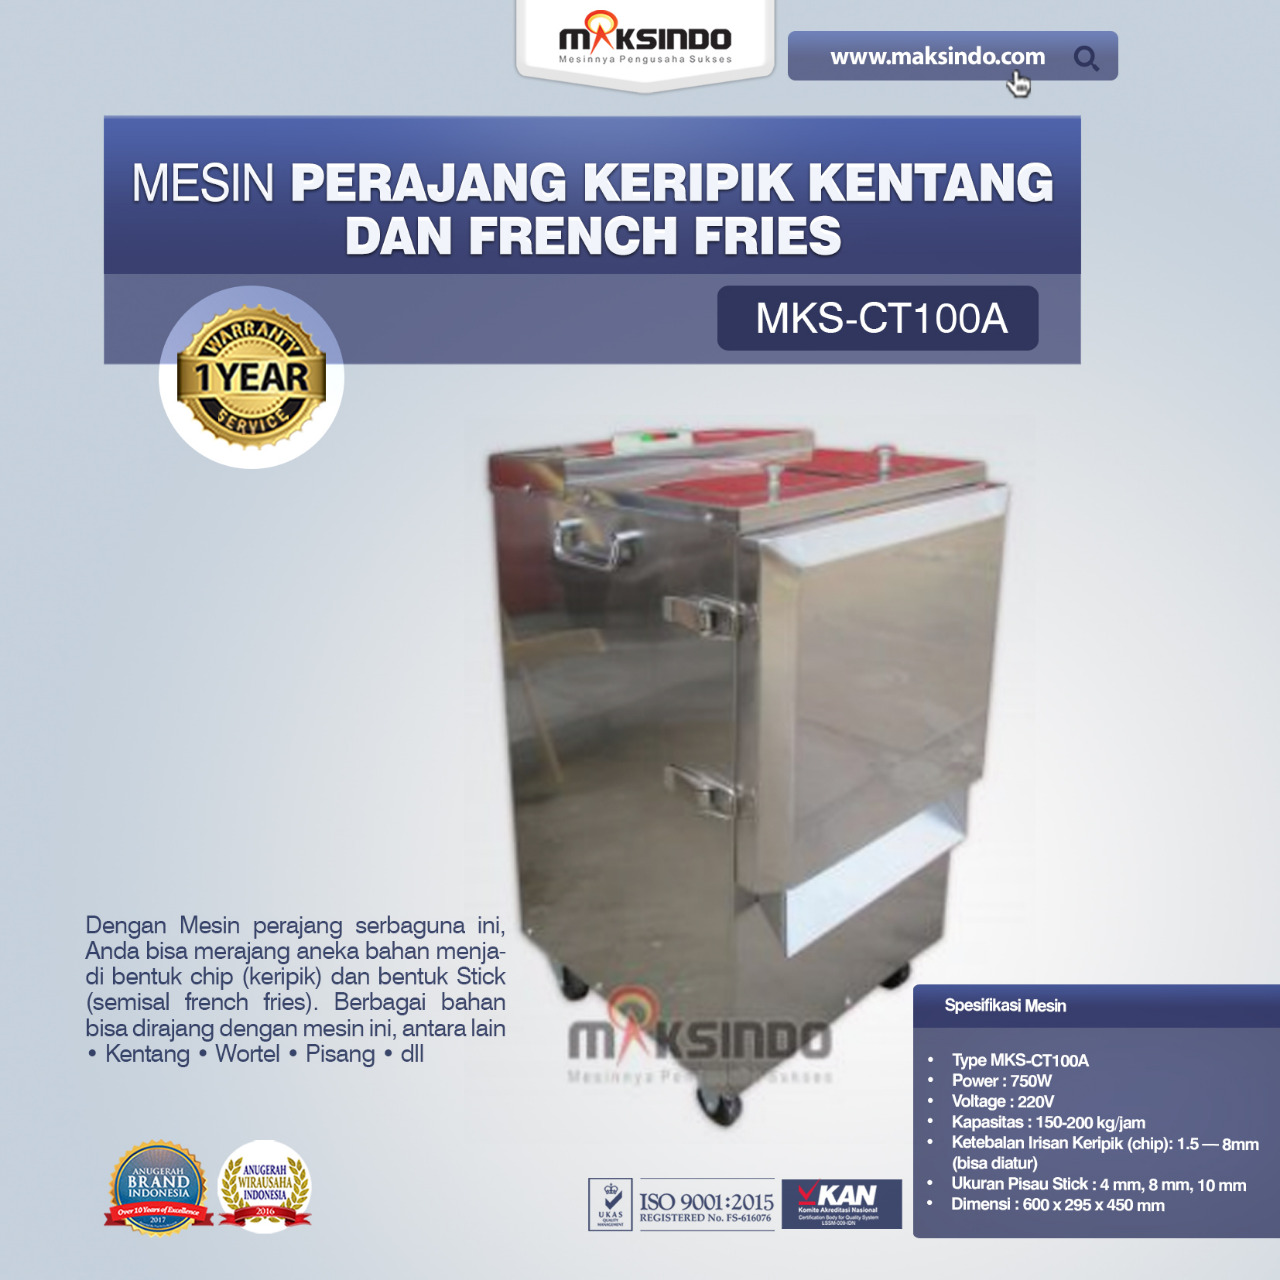 Jual Mesin Perajang Keripik Kentang dan French Fries – MKS-CT100A di Malang